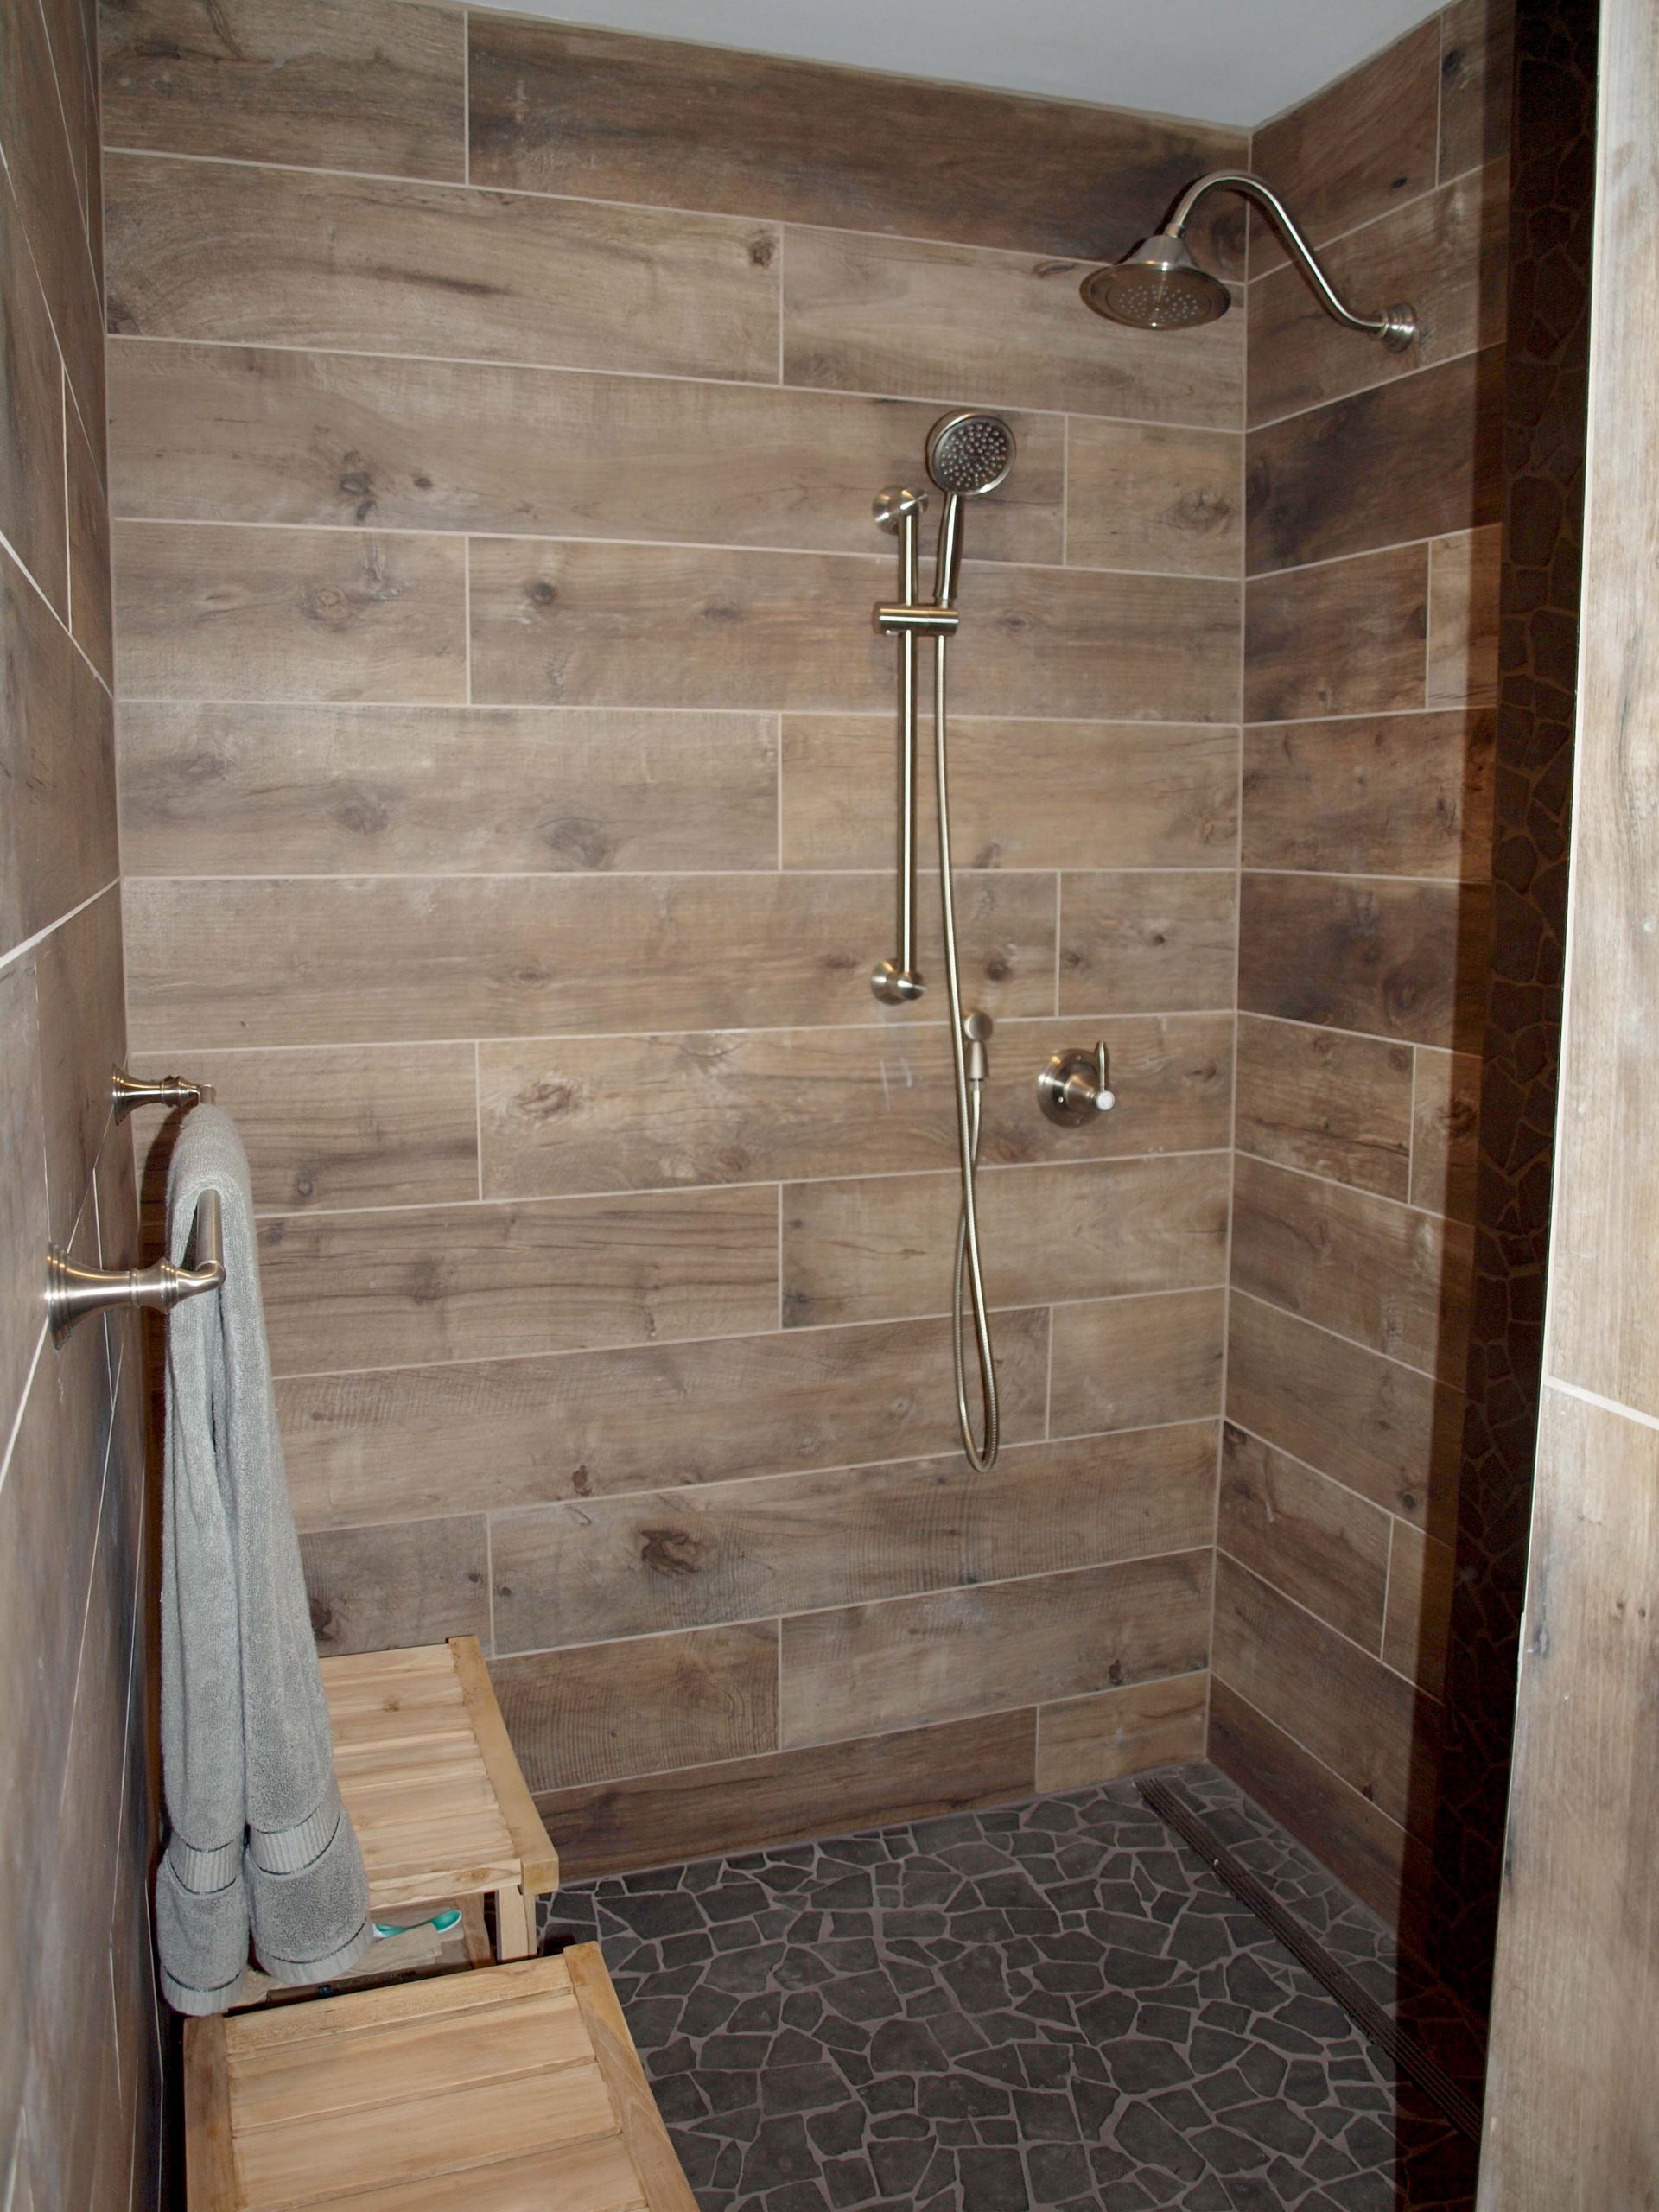 Wood Look Tile Bathrooms
 Wood Look Tile on Walls Normandy Remodeling